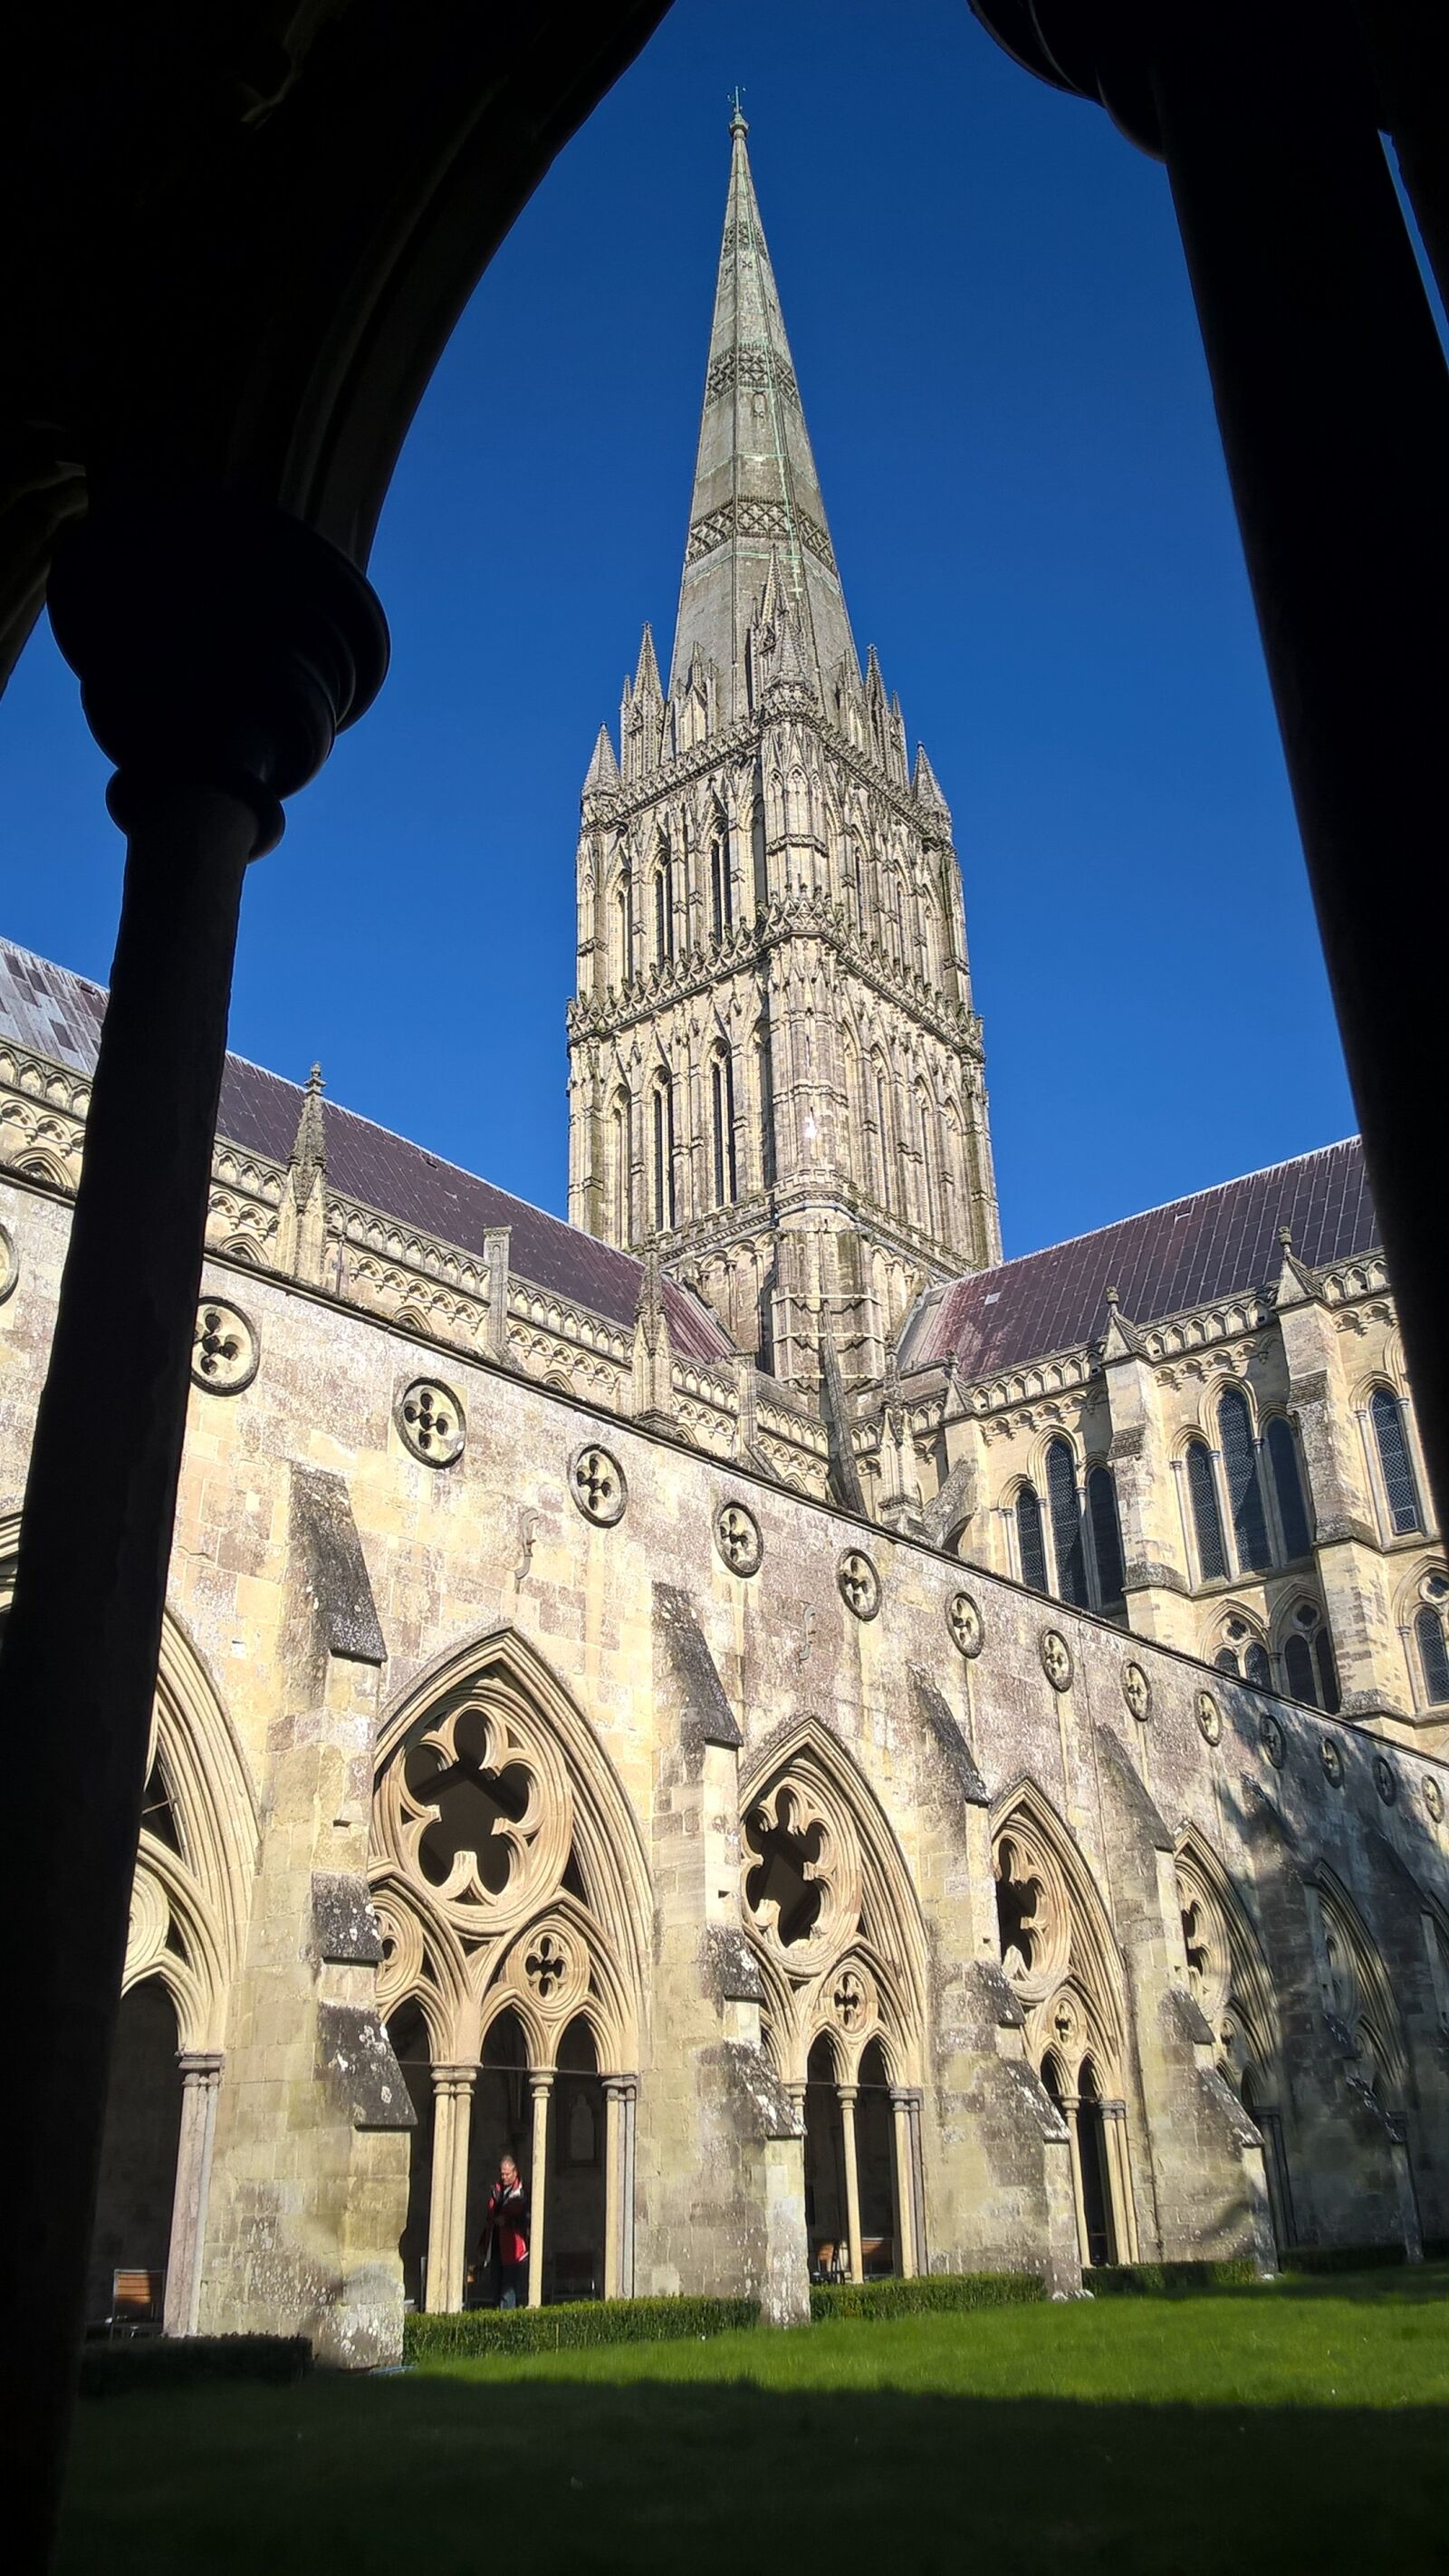 Nokia Lumia 830 sample photo. Cathedral, salisbury, gothic photography